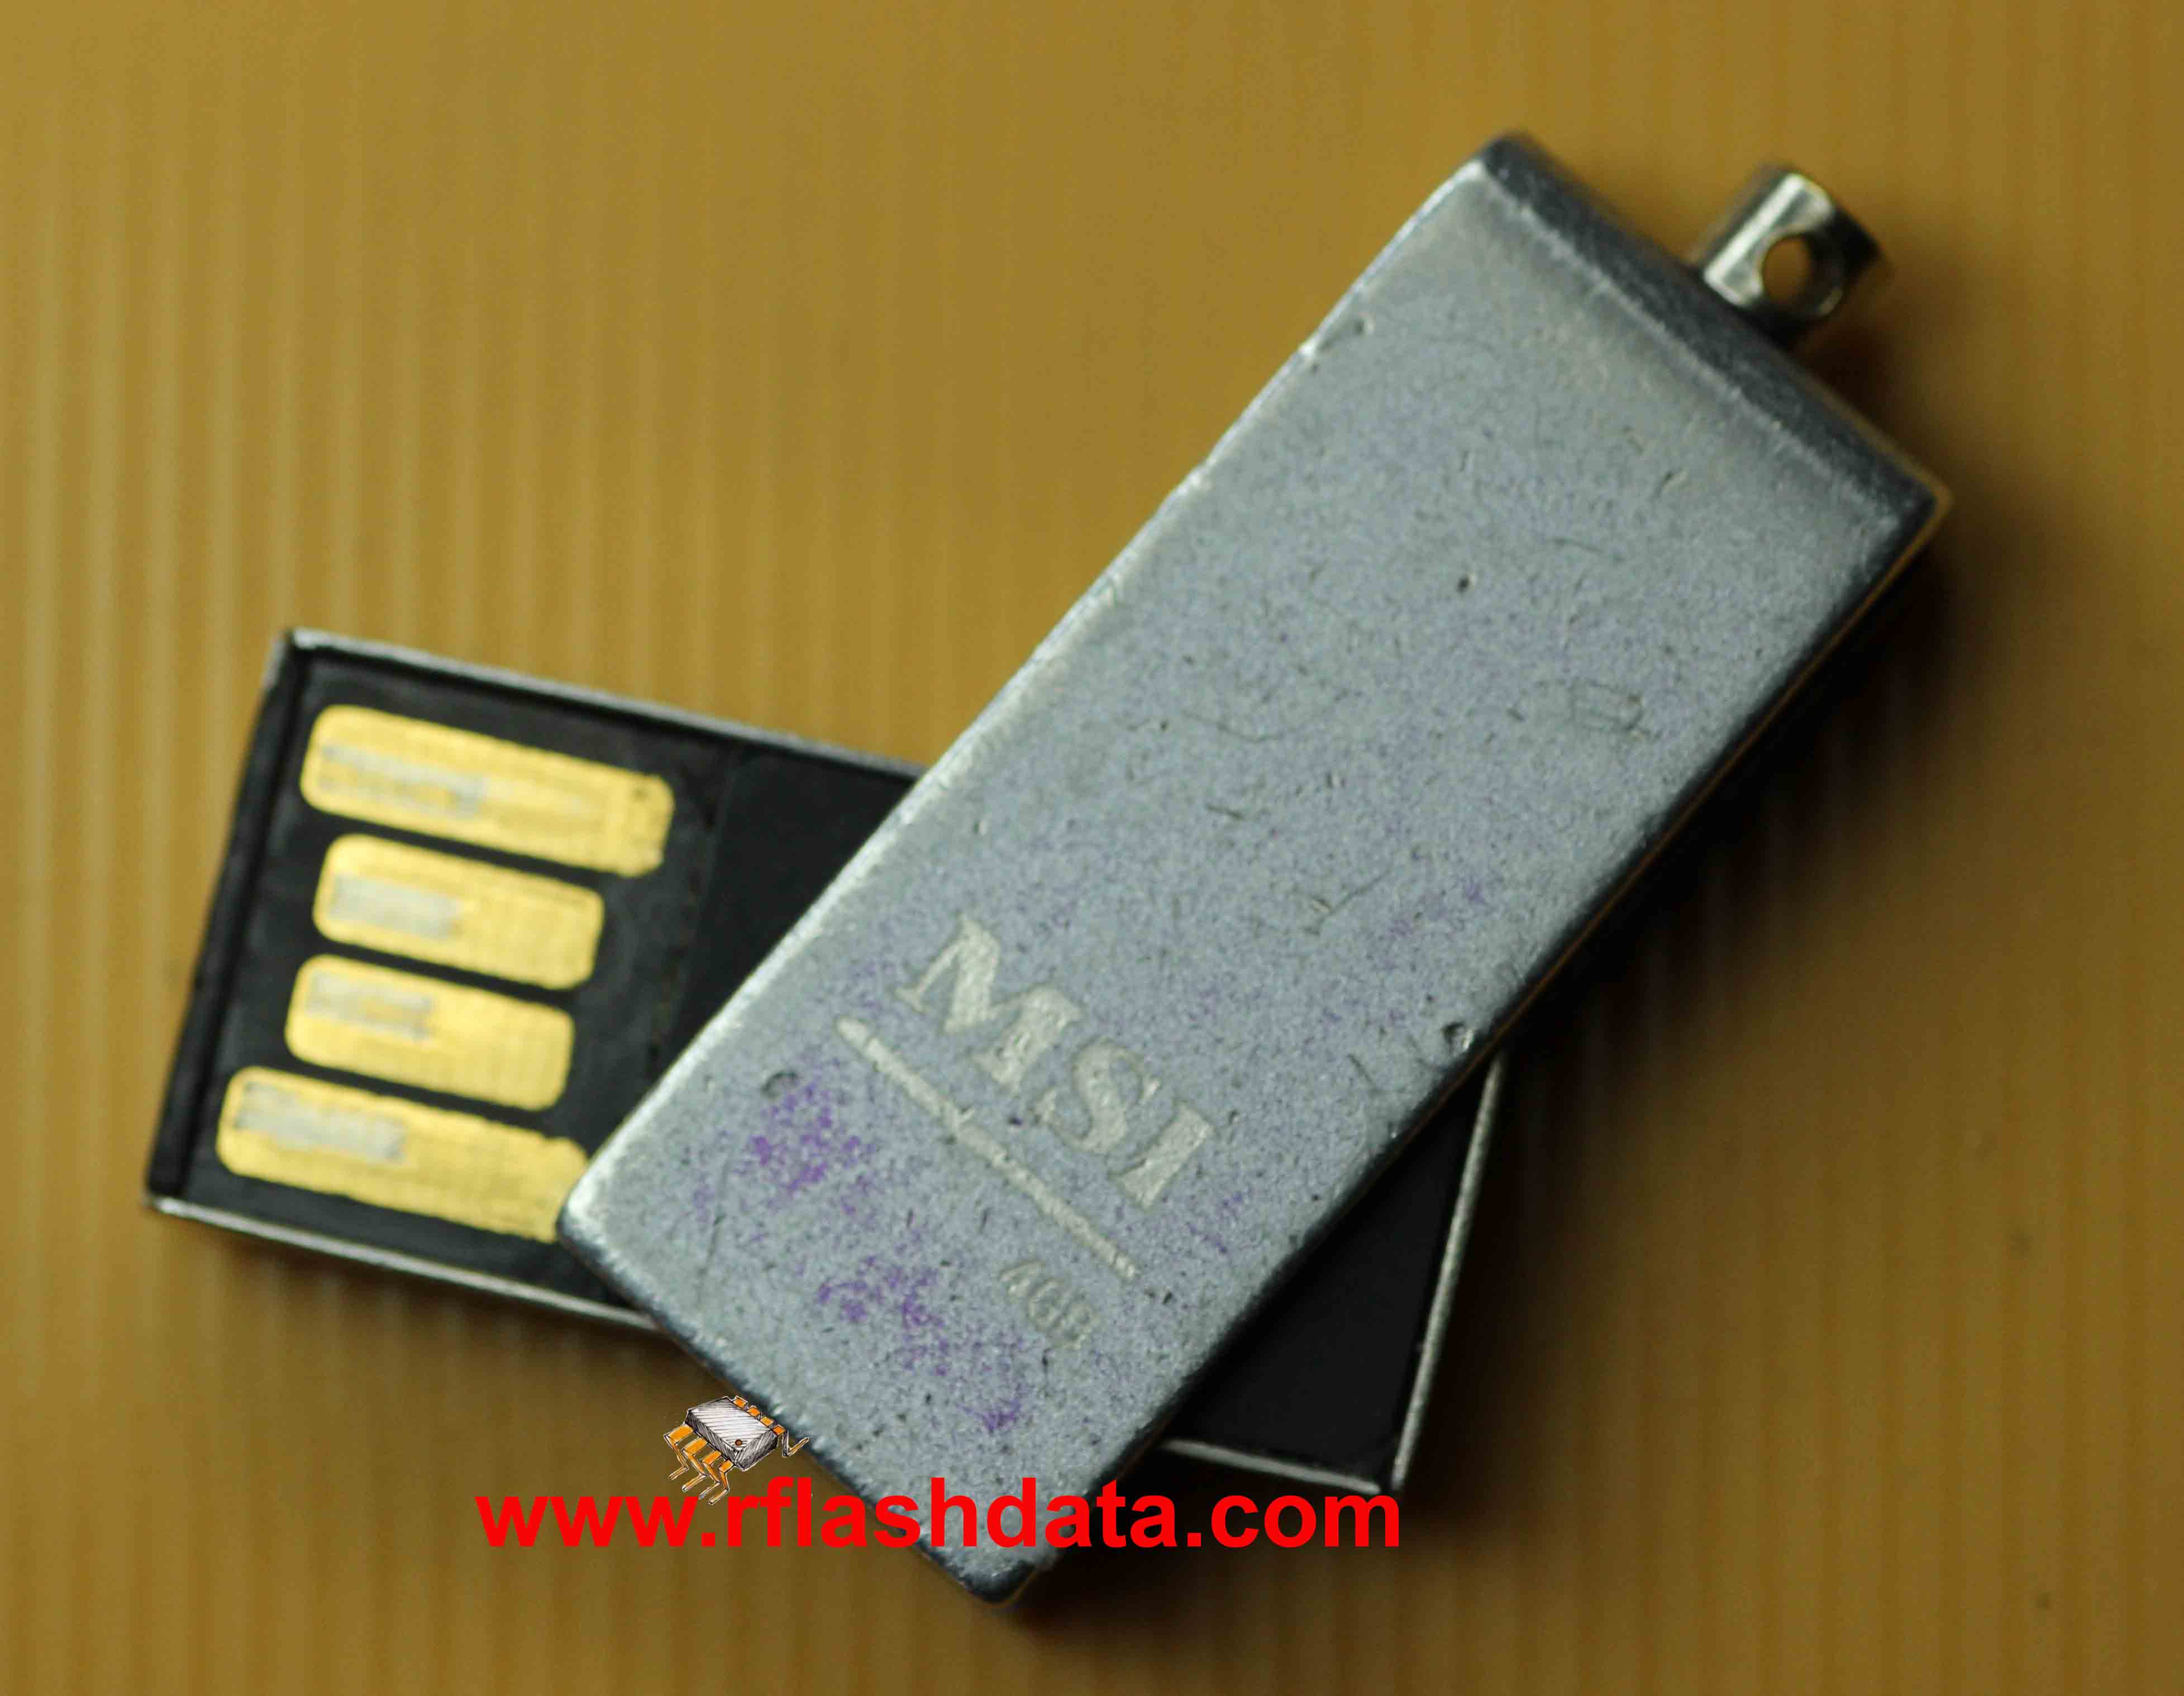 MSI USB flash drive